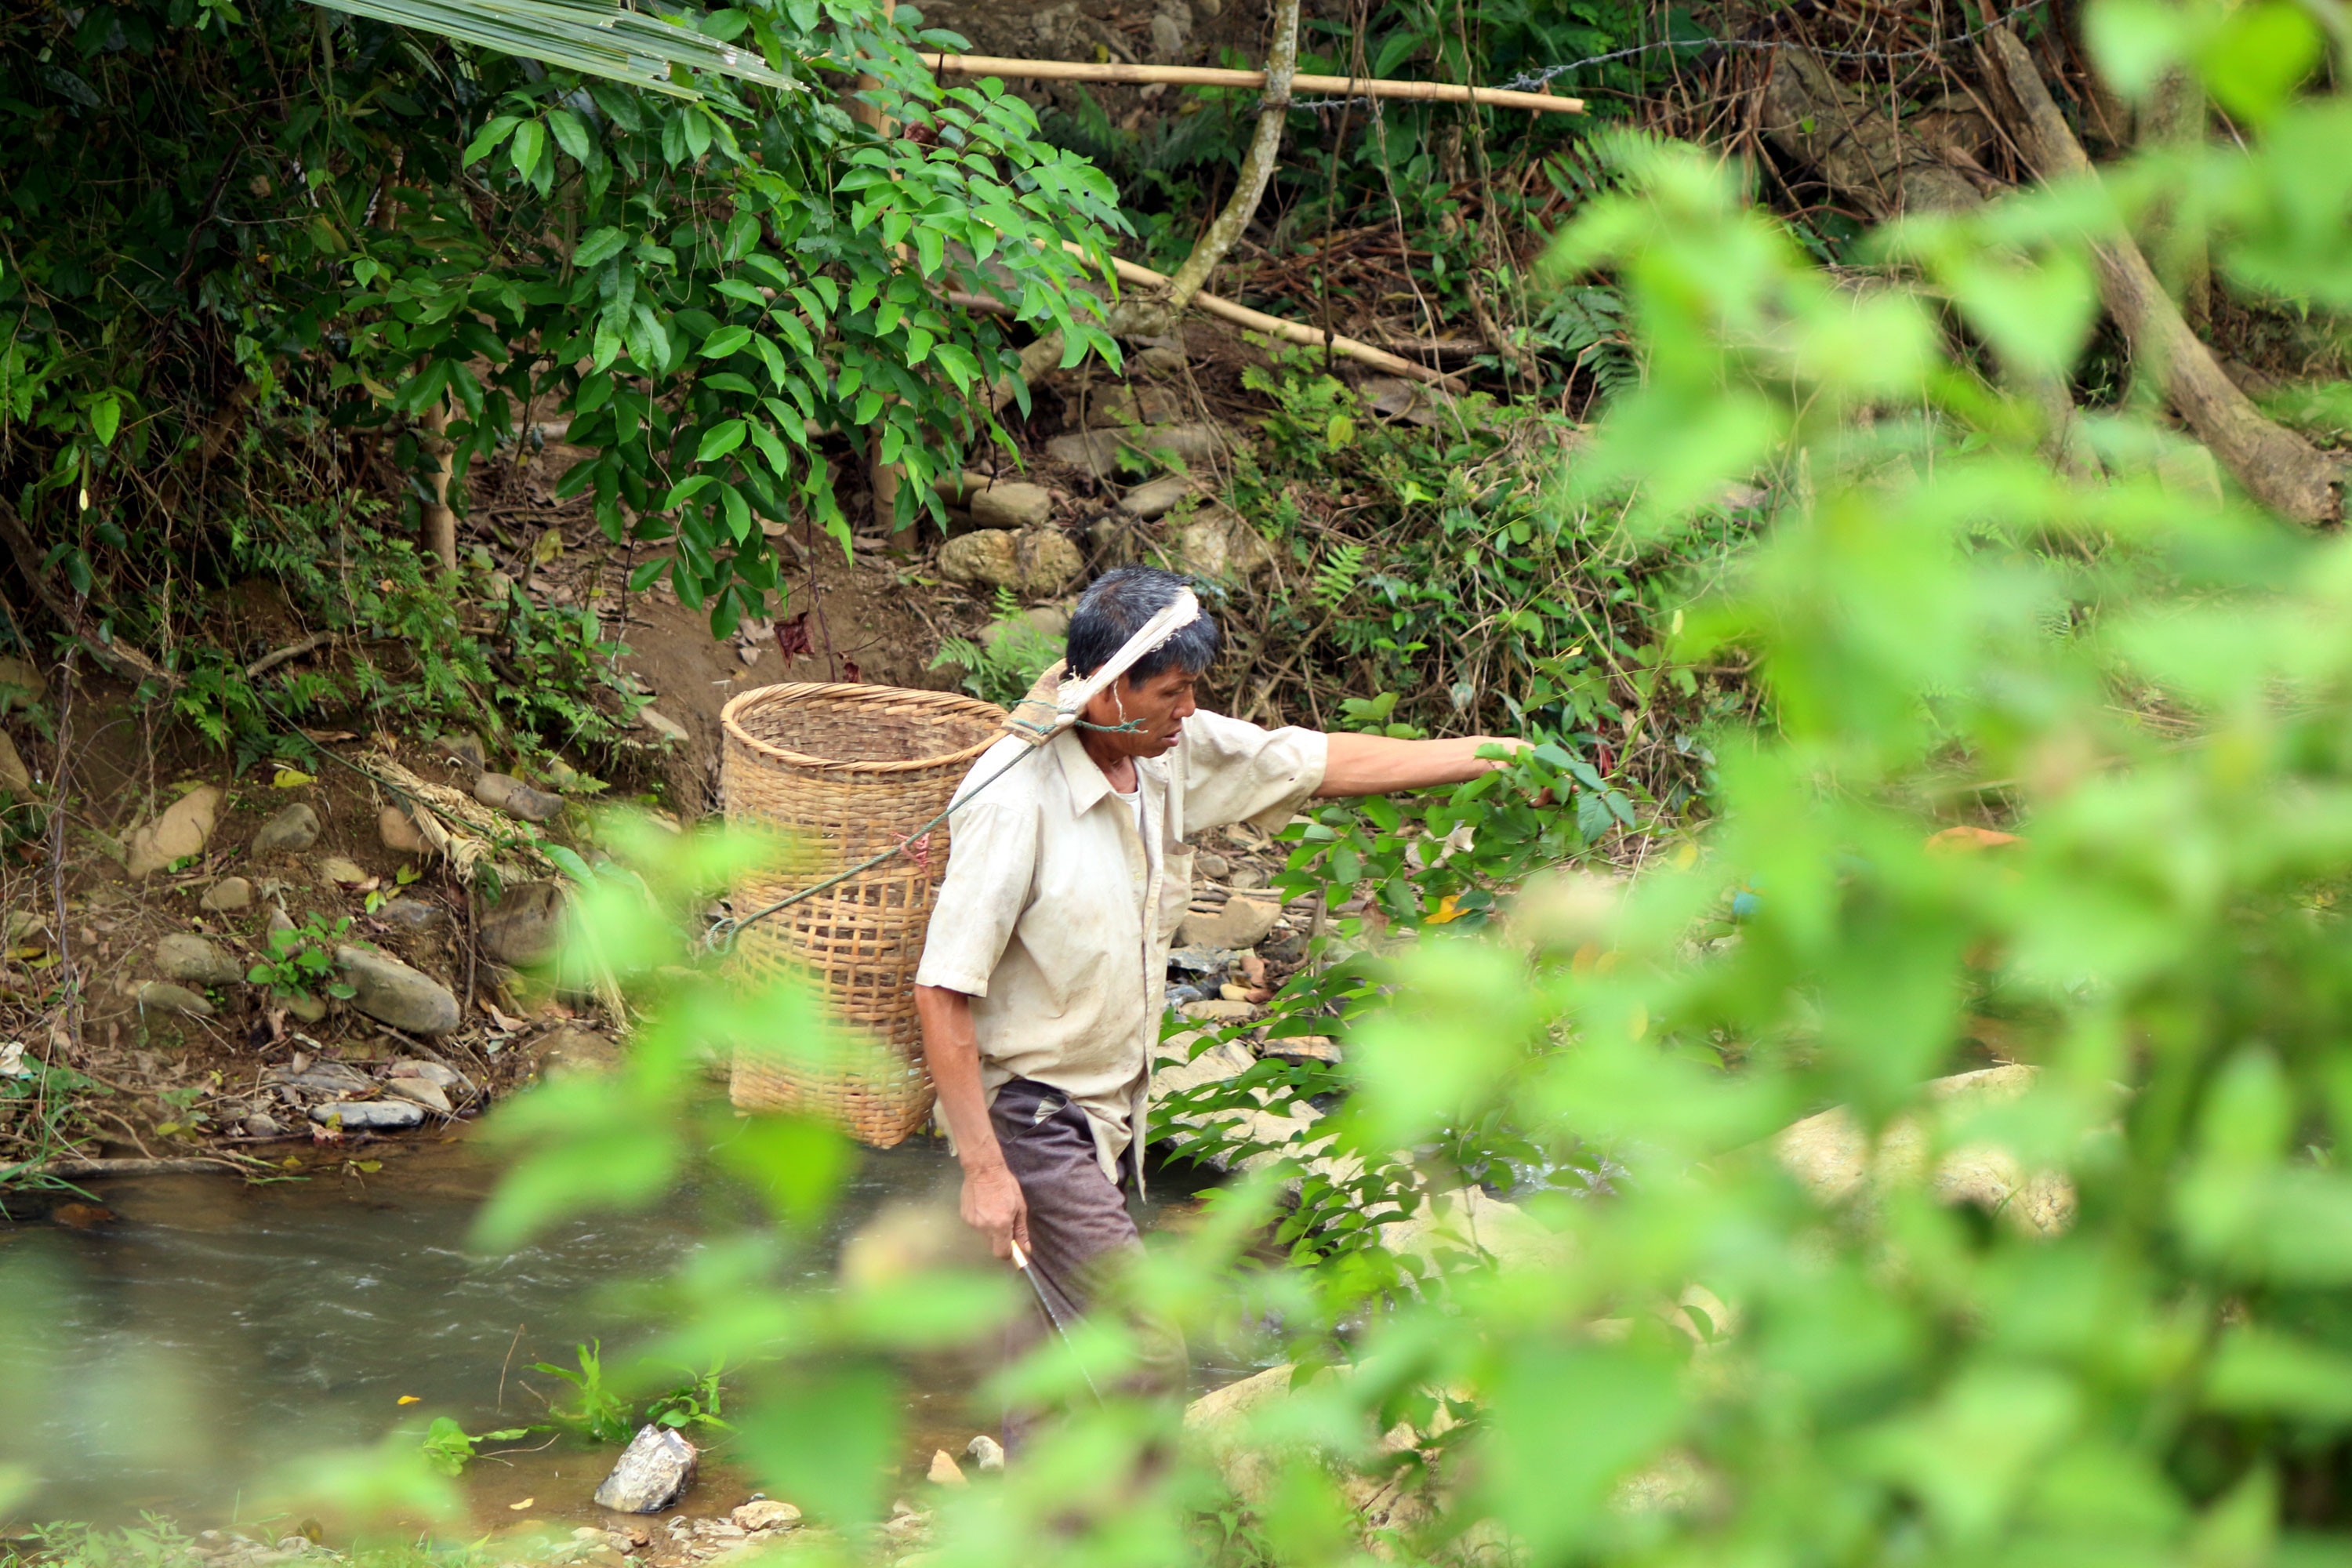 Công việc hàng ngày ngoài sản xuất họ tranh thủ lên rừng, xuống suối kiếm những cây rau, con chuột, con cá trong tự nhiên về cải thiện bữa ăn. Ảnh: Đào Thọ